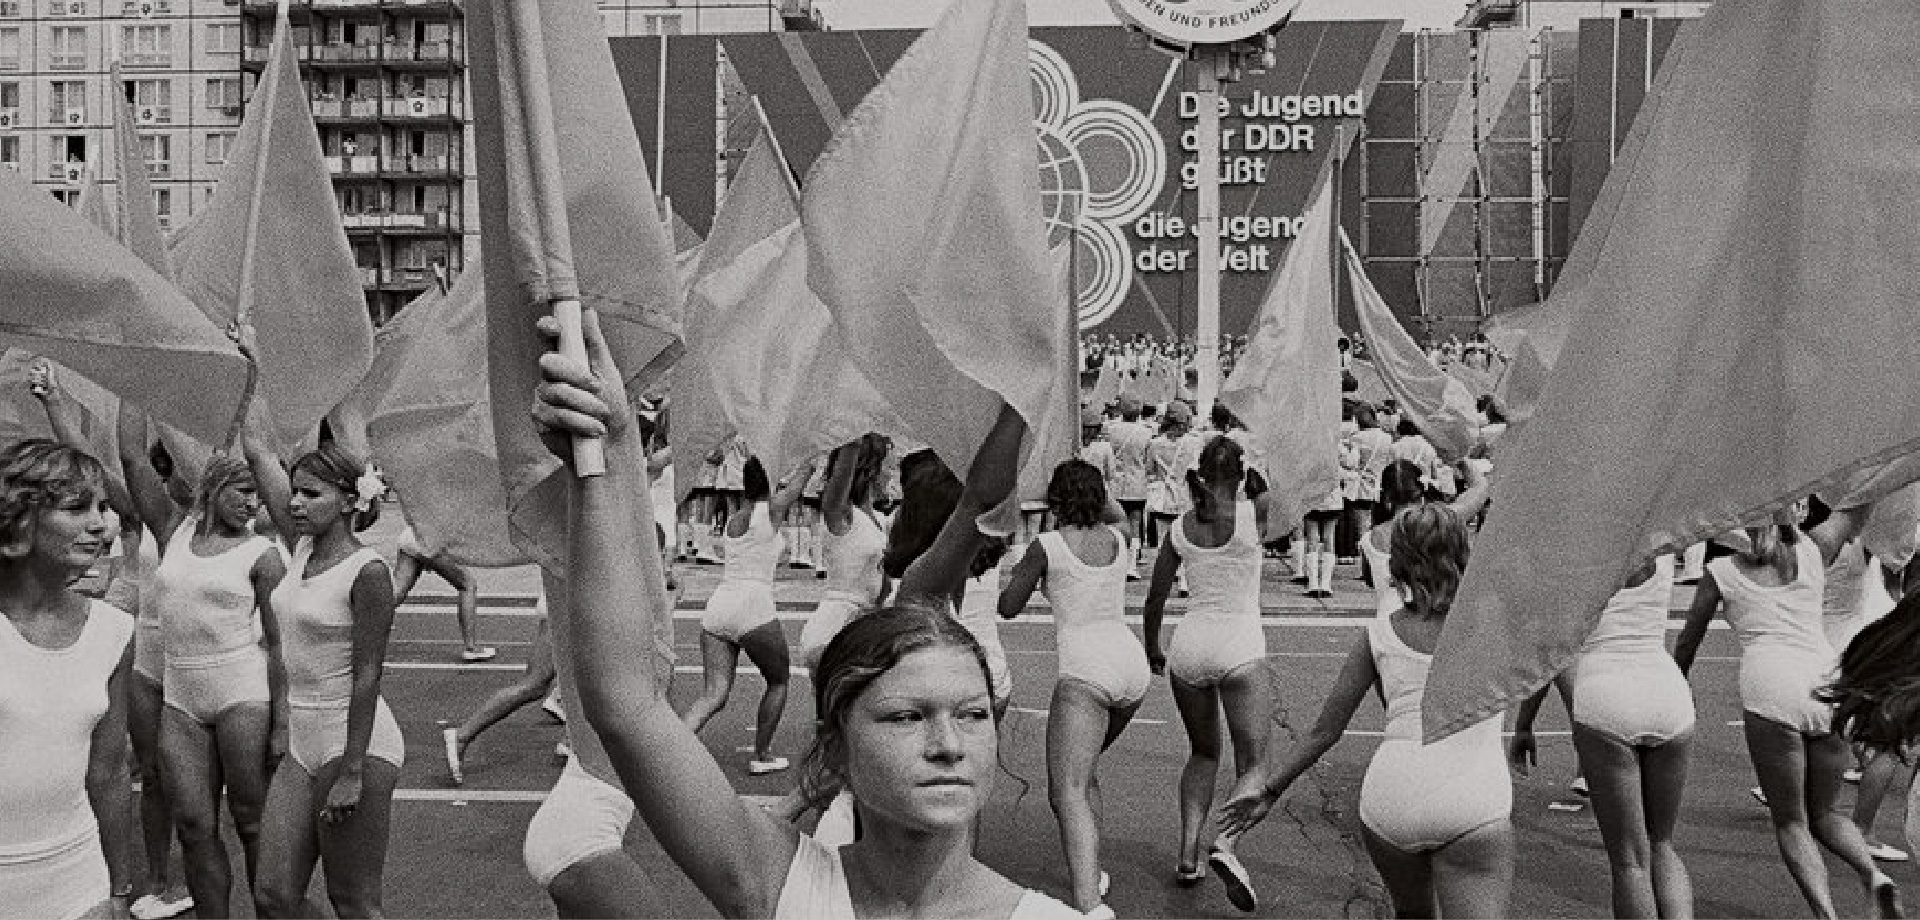 viele Frauen in weißen Turnanzügen und Fahnen, die auf einem grßen Platz tanzen. Im Hintergrund steht "Die JUgend der DDR grüßt die Jugen der Welt"